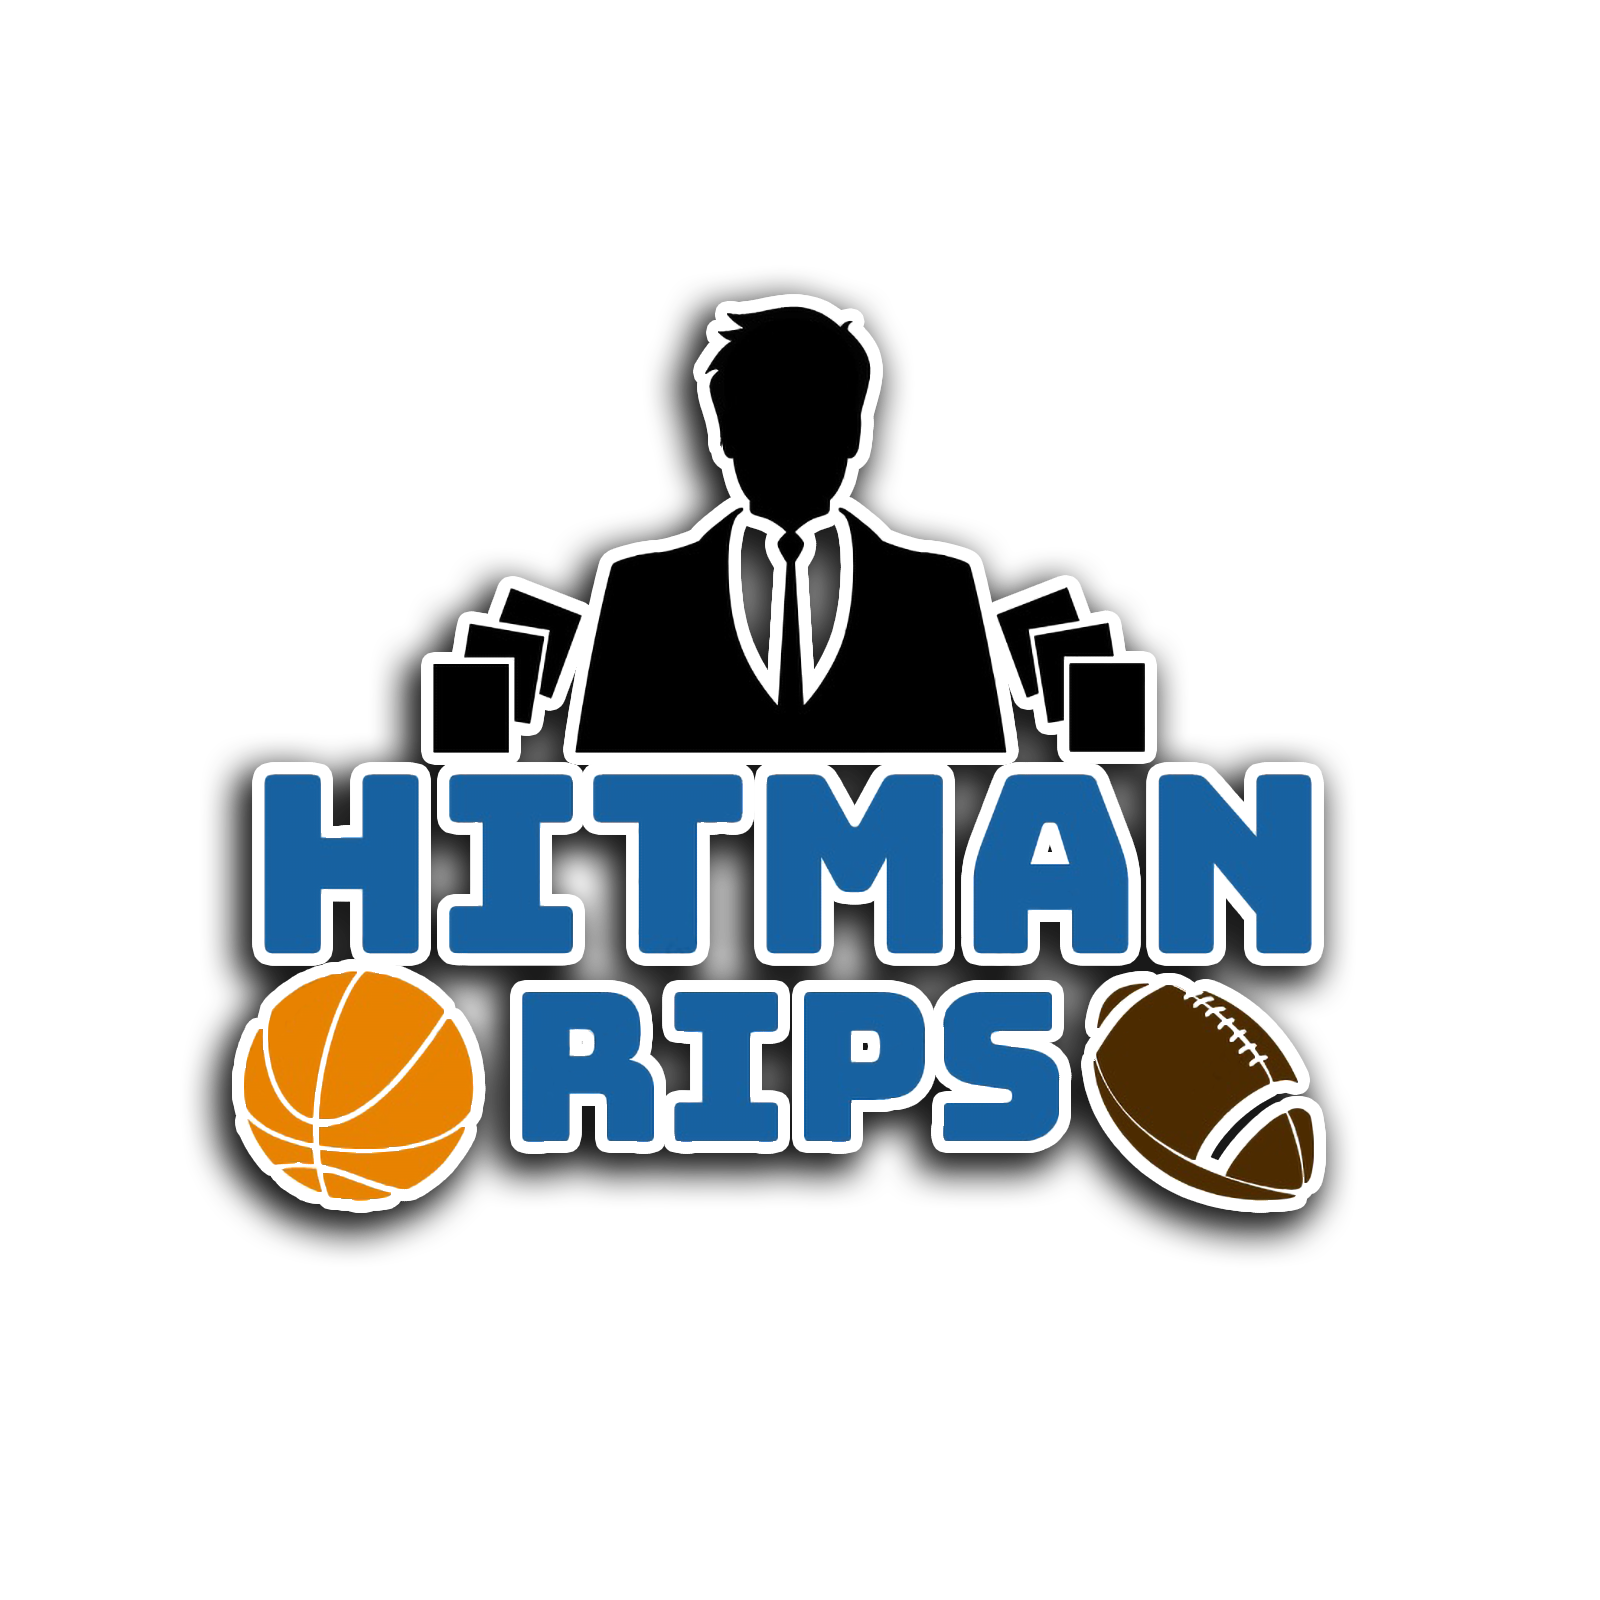 Hitman Rips